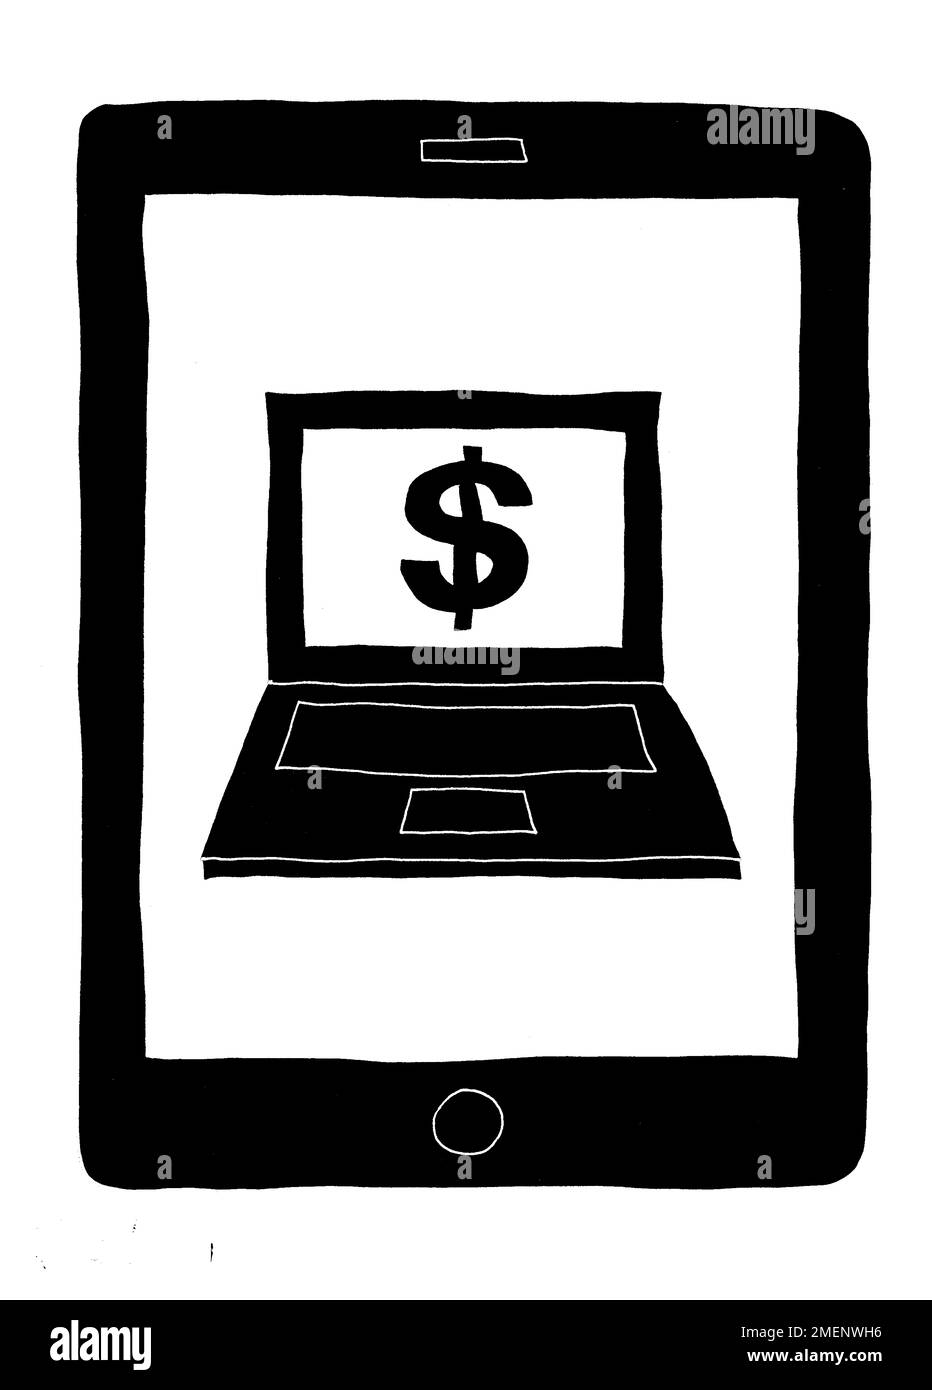 Immagine in bianco e nero del dispositivo tablet con notebook e simbolo del dollaro sovrapposti sullo schermo Foto Stock